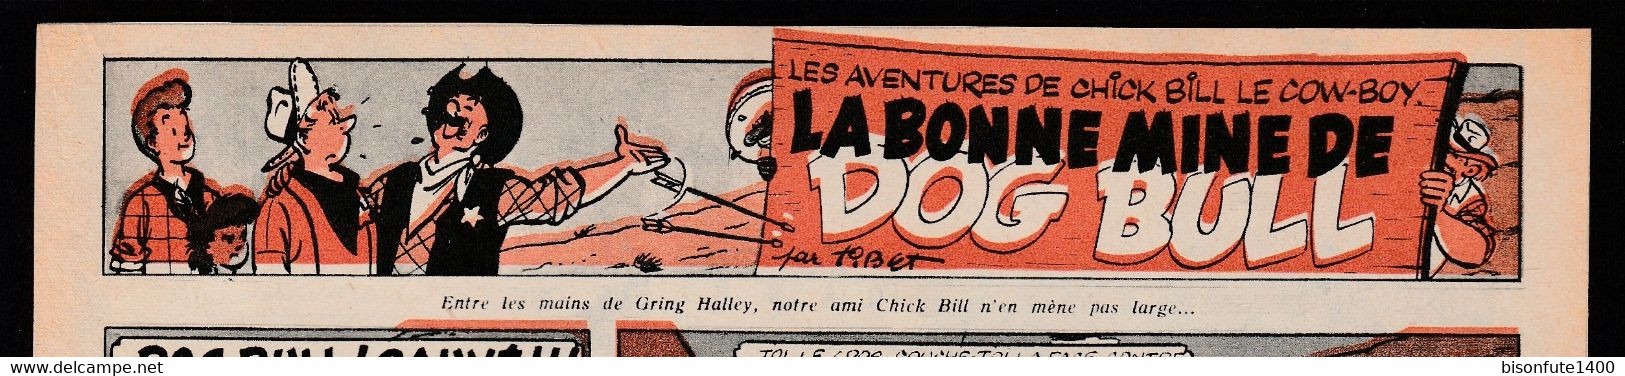 Bandeau Titre De Chick Bill "La Bonne Mine De Dog Bull" Datant De 1957 Et Inédit Dans Les Bandes Dessinées En Album. - Chick Bill